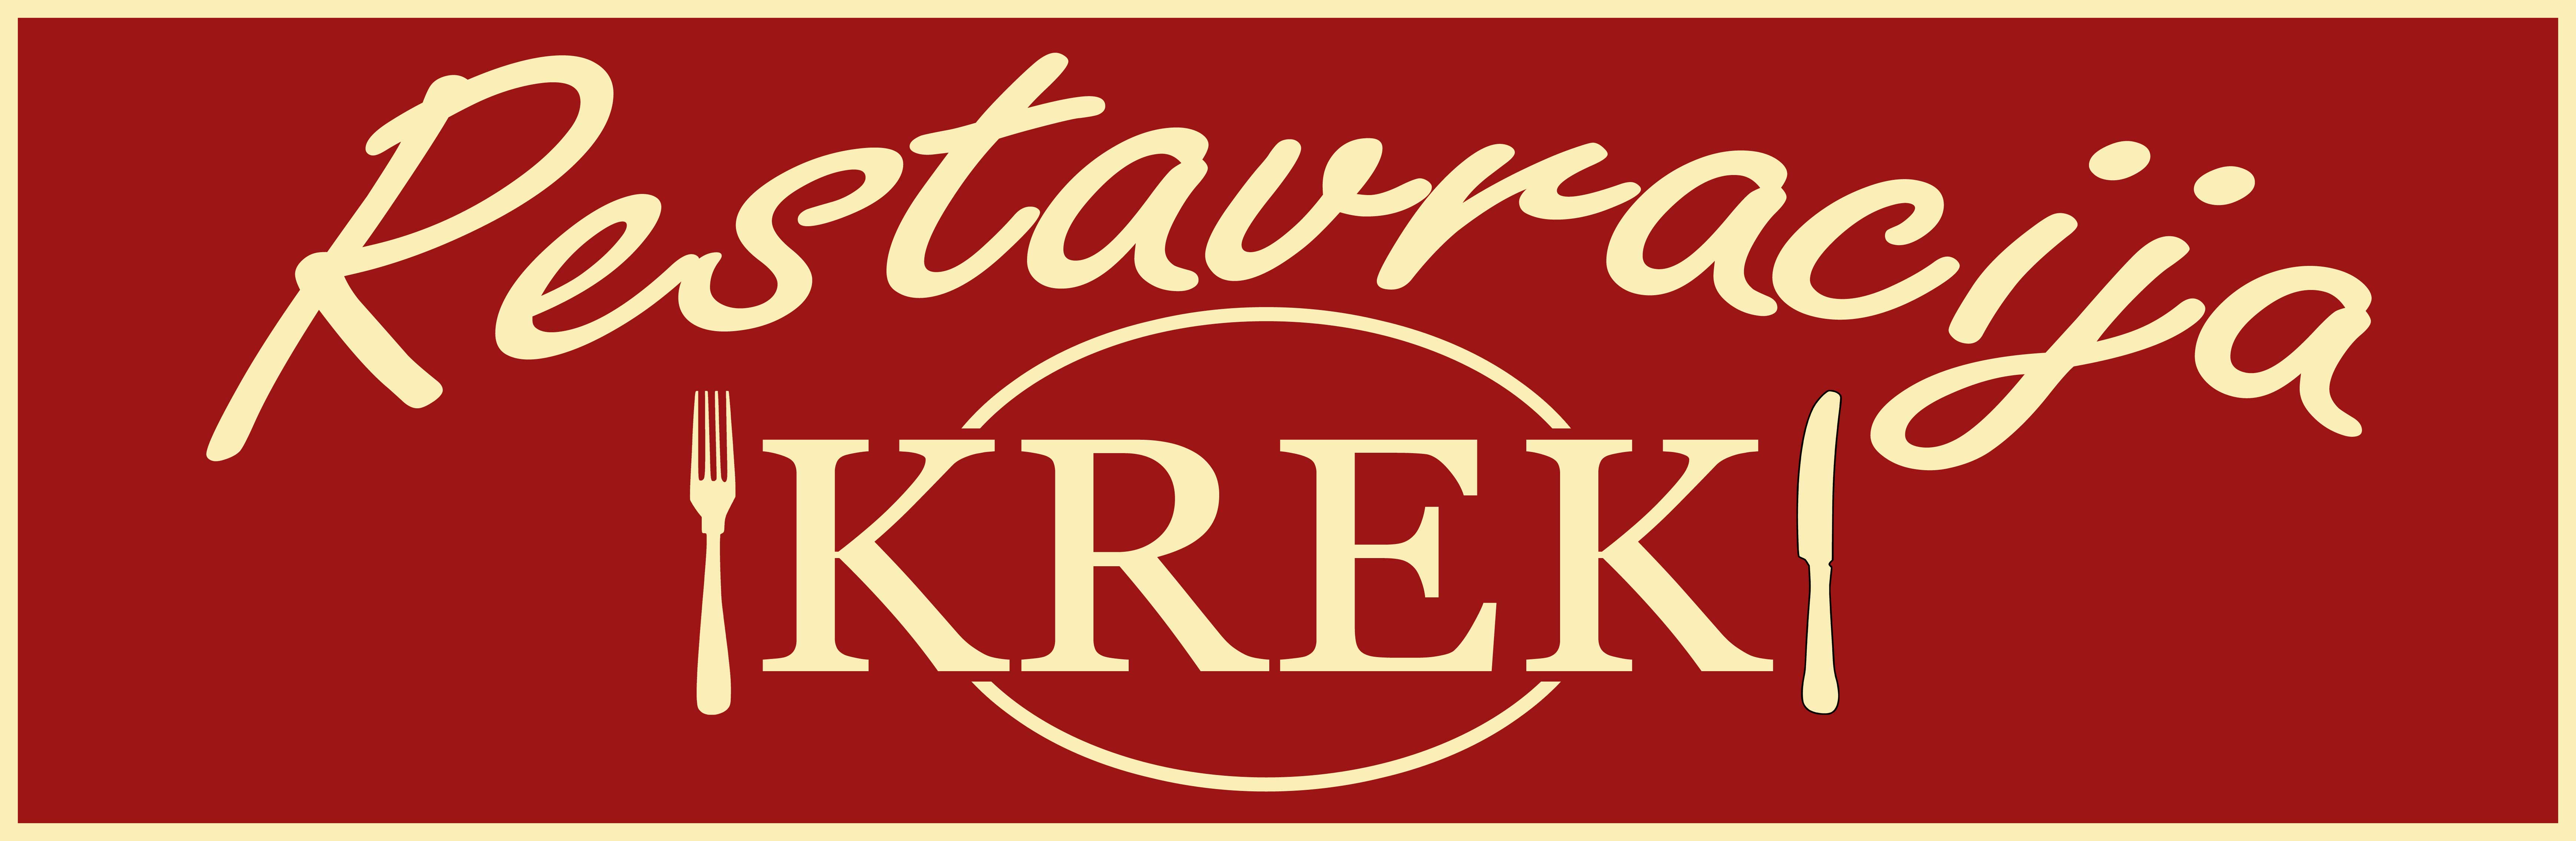 logo restaurant krek